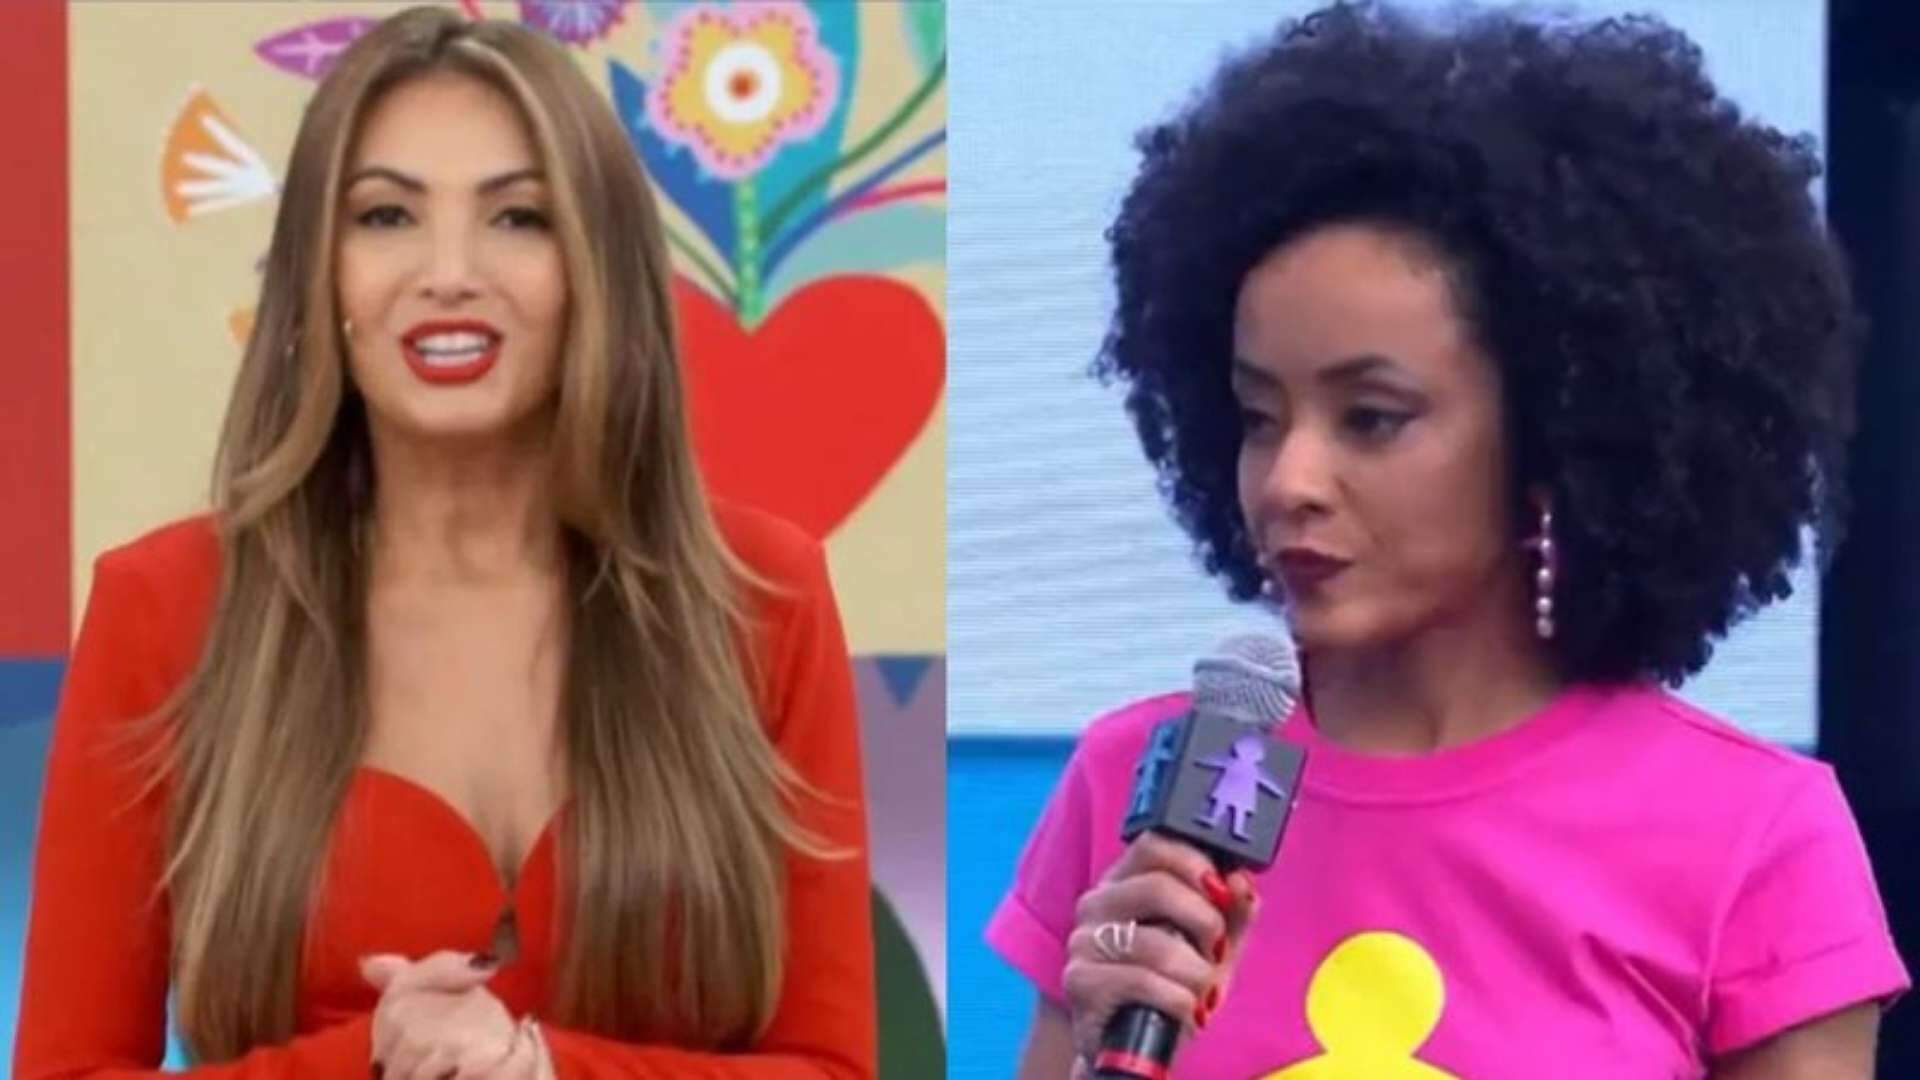 Patrícia Poeta interrompe jornalista ao vivo e deixa internautas revoltados: “Constrangimento” - Metropolitana FM